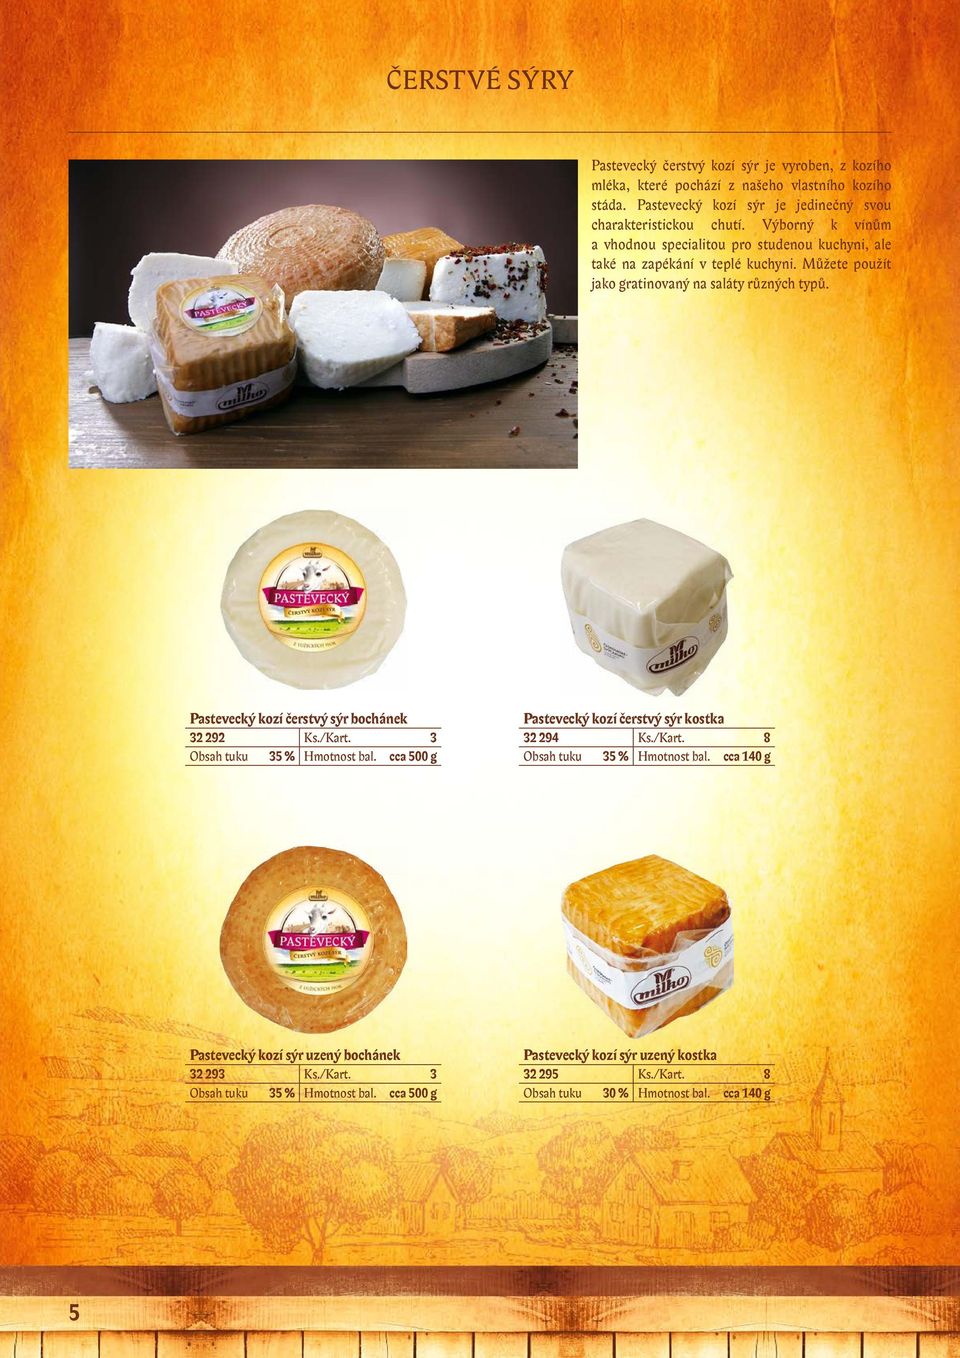 Pastevecký kozí čerstvý sýr bochánek 32 292 Ks./Kart. 3 Obsah tuku 35 % Hmotnost bal. cca 500 g Pastevecký kozí čerstvý sýr kostka 32 294 Ks./Kart. 8 Obsah tuku 35 % Hmotnost bal.